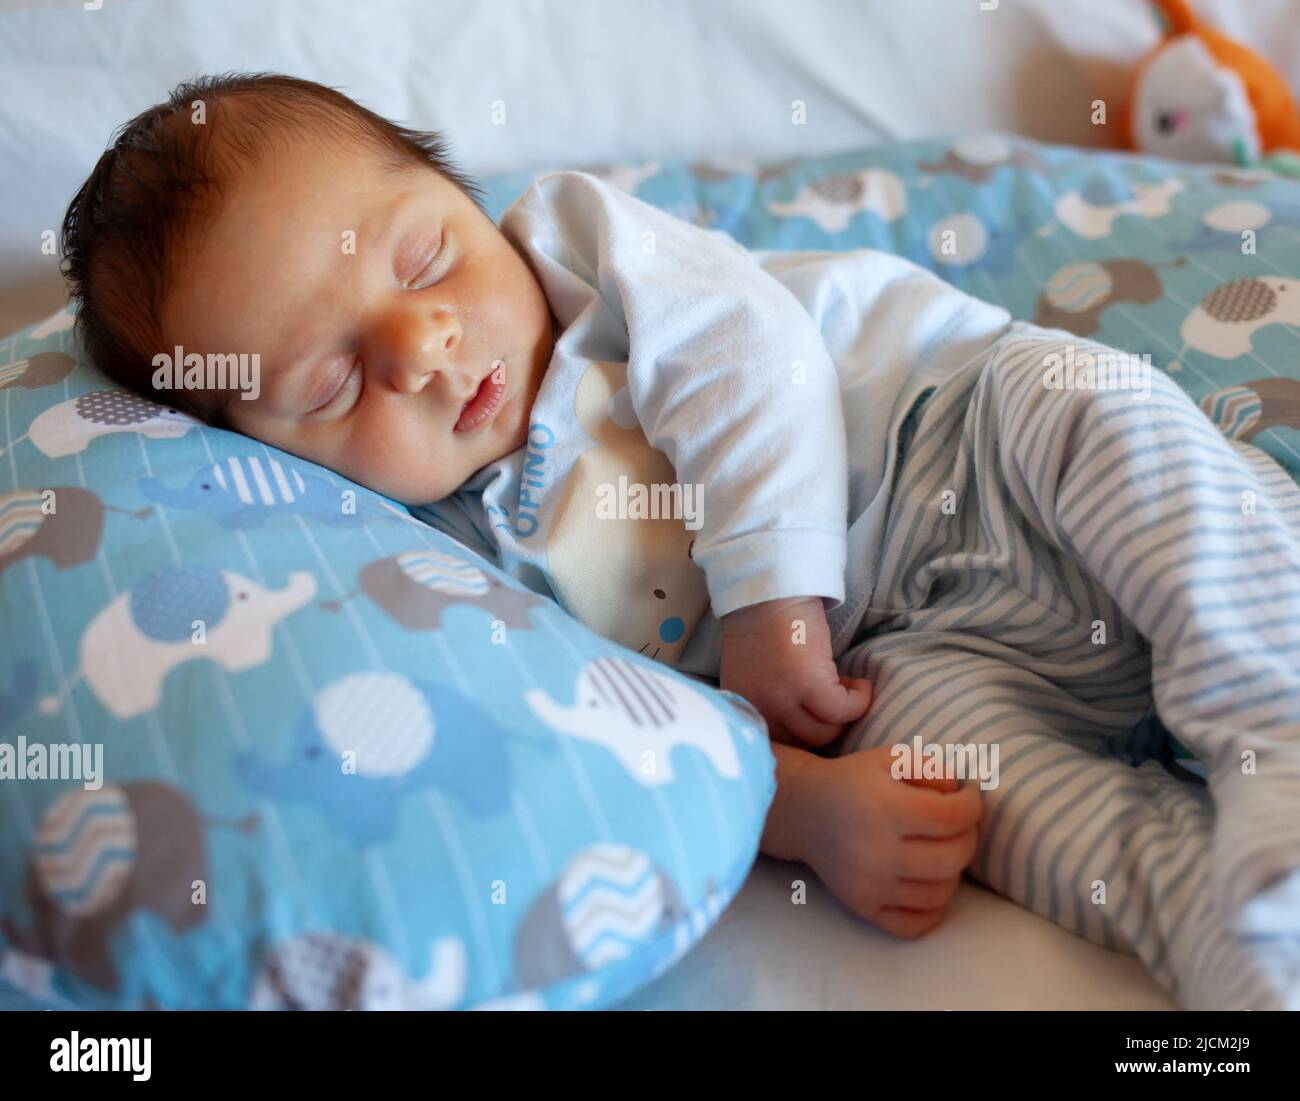 Un bebé de unos días duerme sobre una almohada redonda. La fase del sueño es muy importante en la infancia. Foto de stock